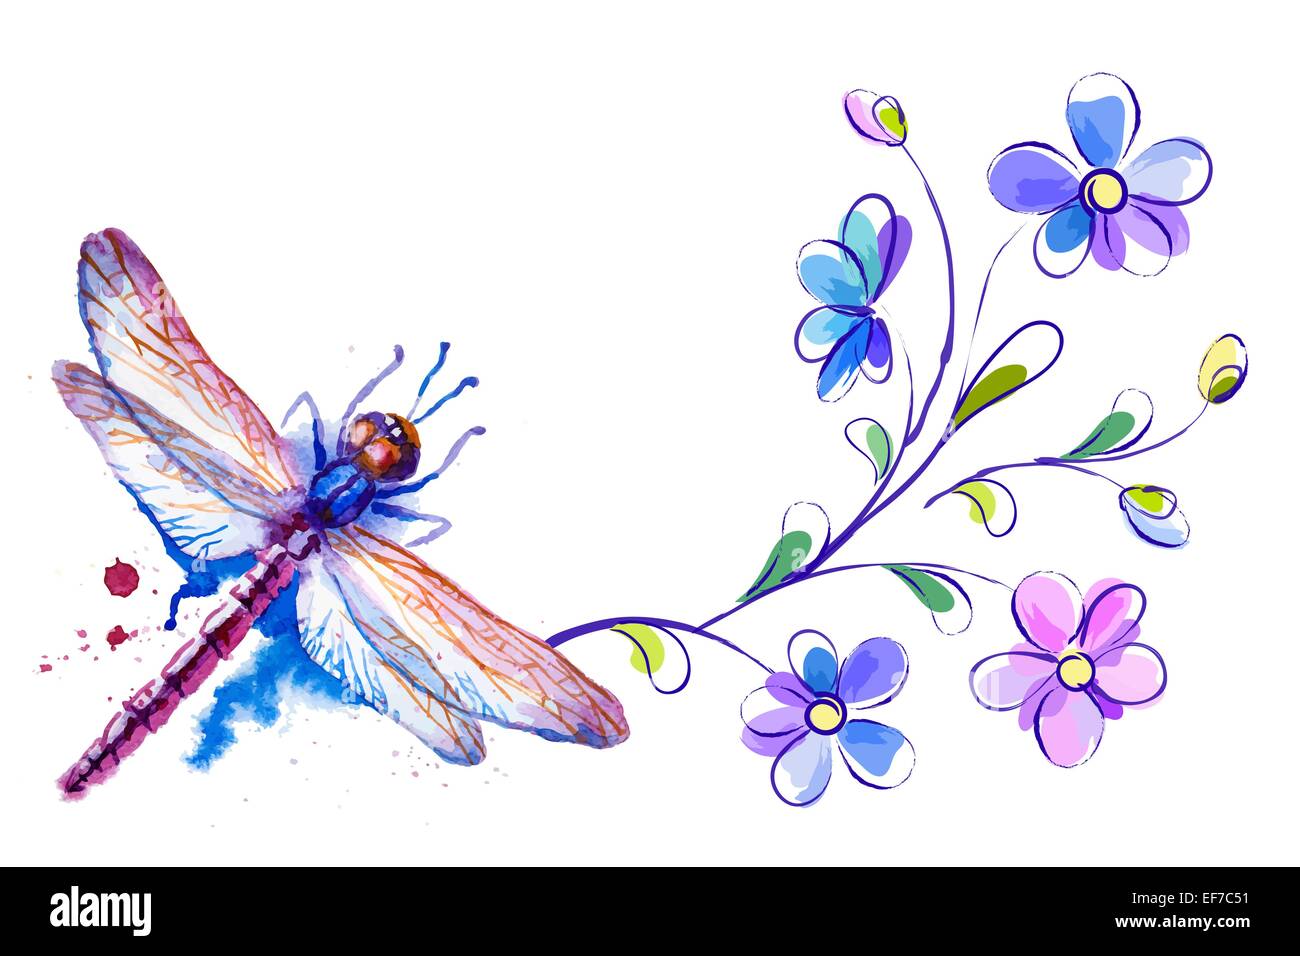 Horizontale Hintergrund mit Libelle und Blumen auf dem weißen - Vektor-illustration Stock Vektor